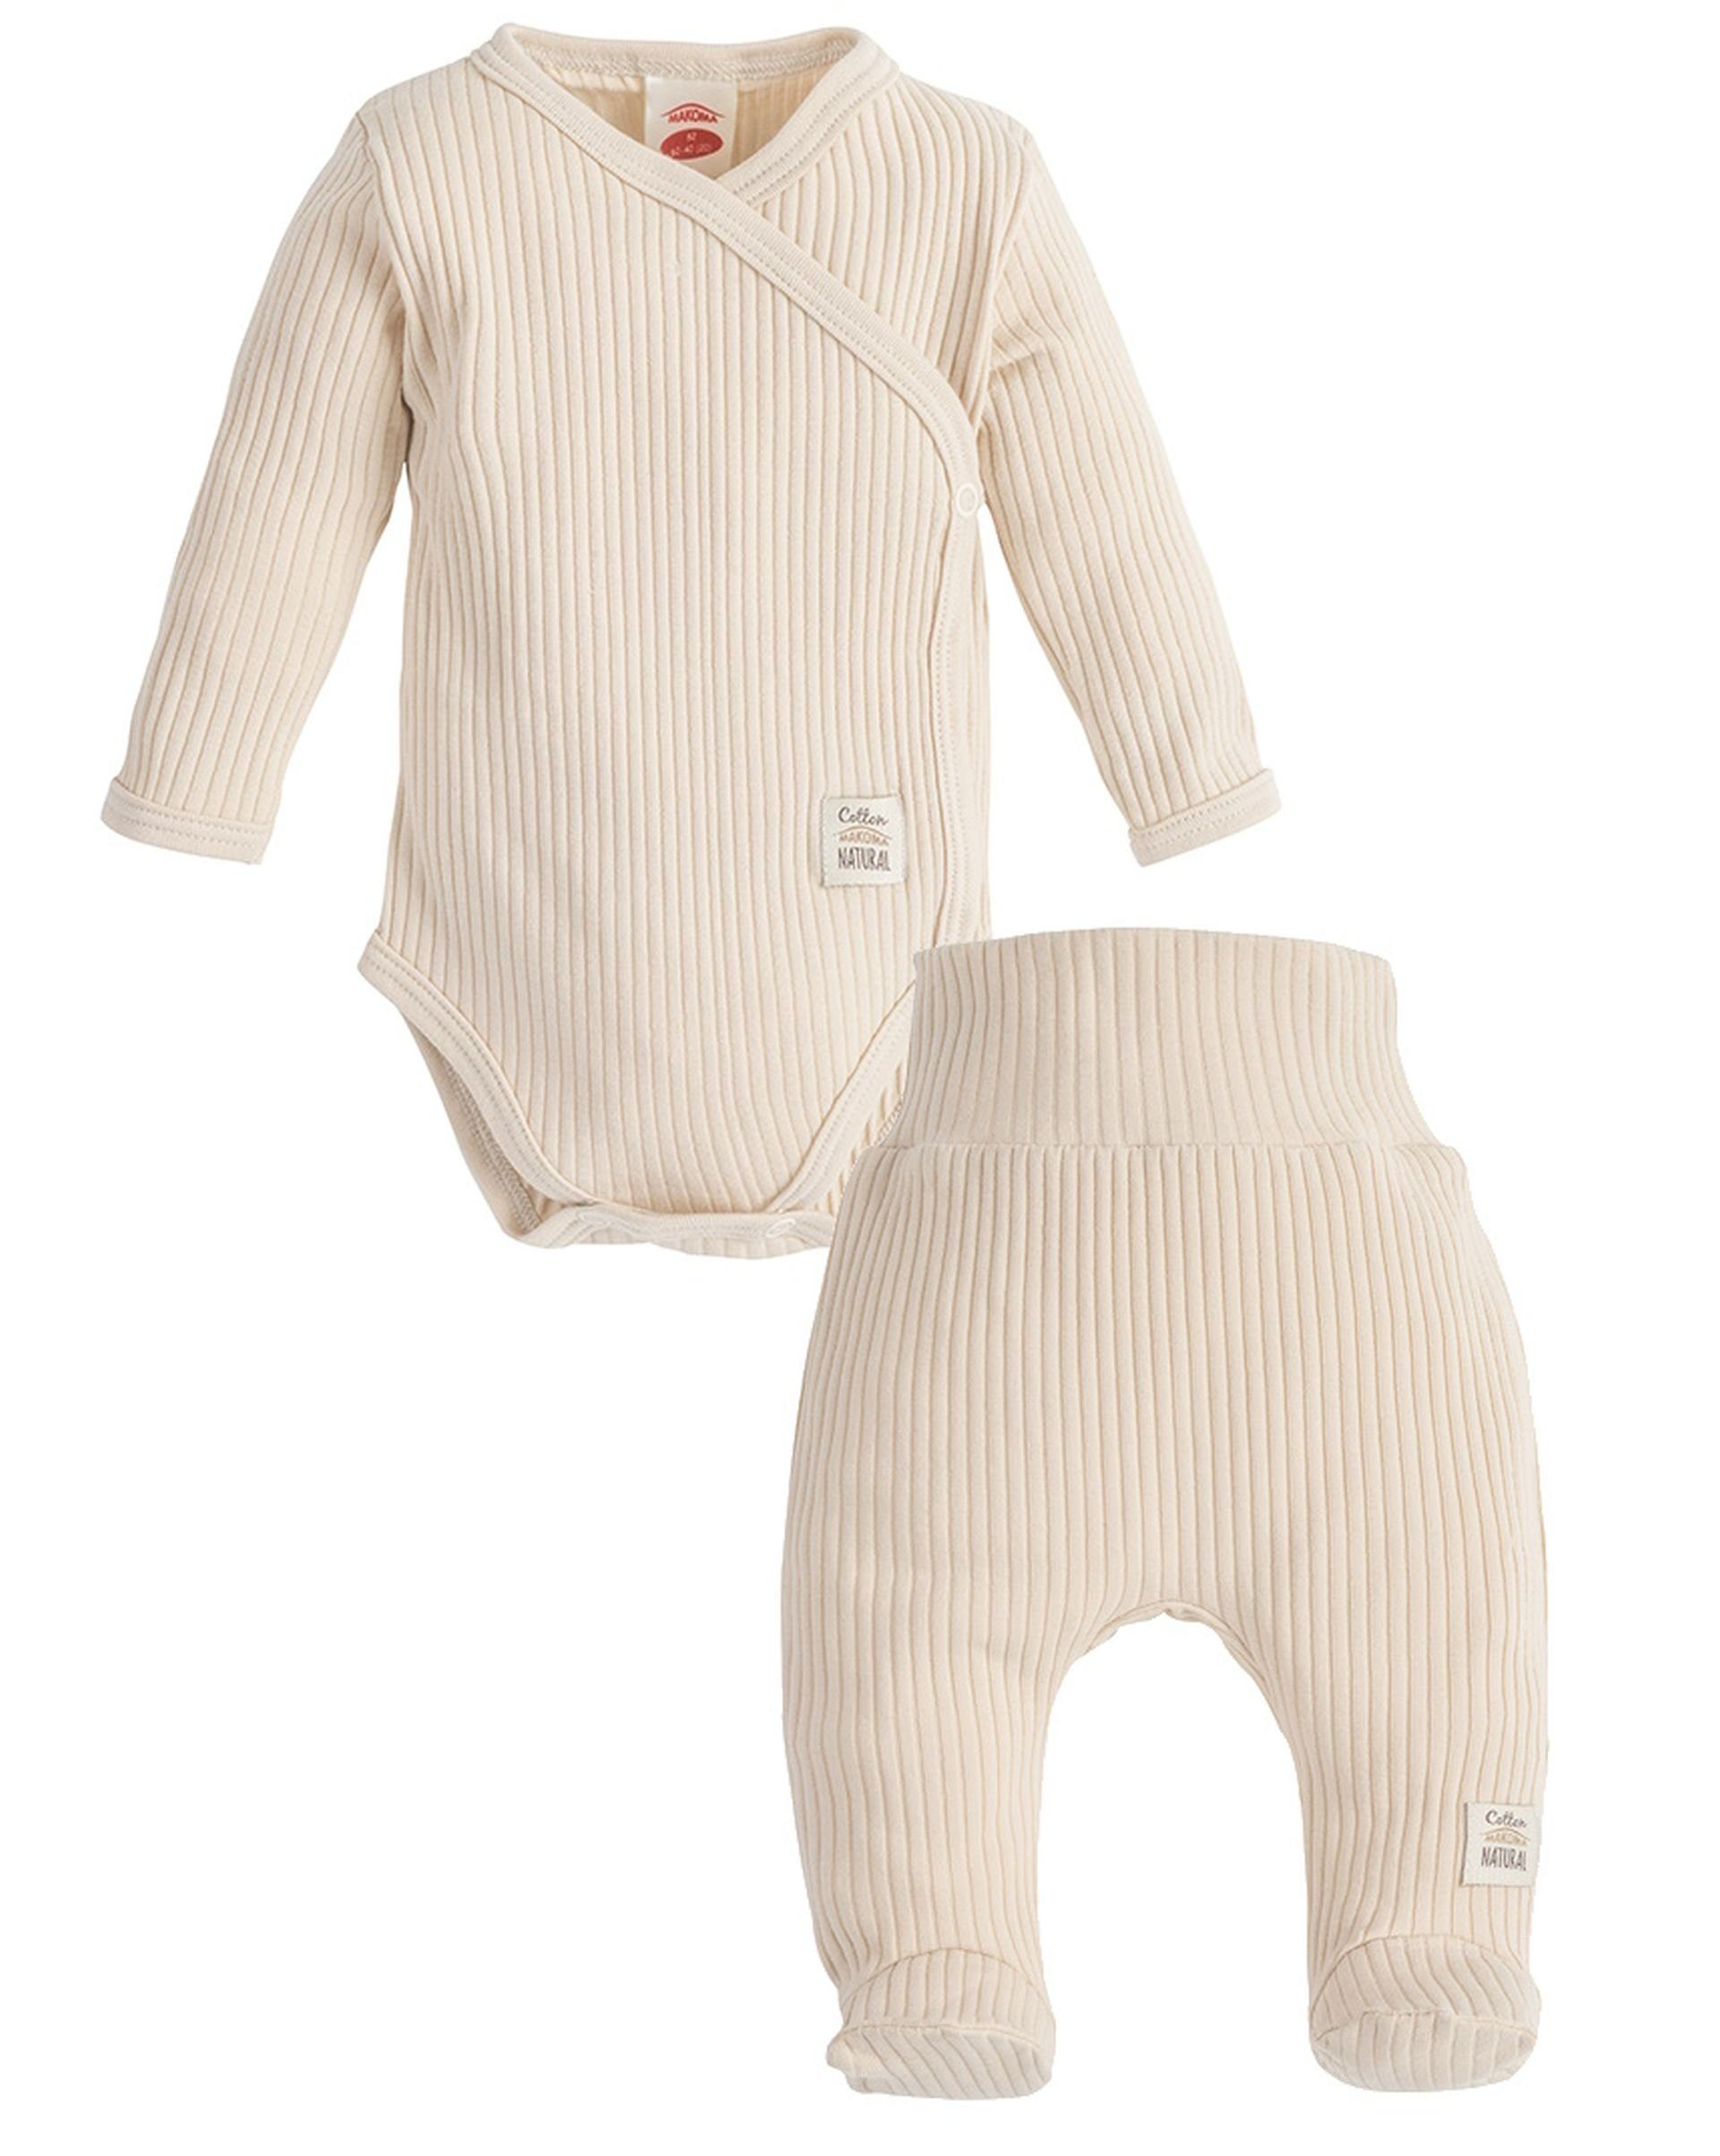 Fuß 100% & mit 2-tlg) Makoma Hose Wickelbody Kleidung-Set Erstausstattungspaket Neutral Baby -Harmony- Baumwolle Beige (Set,